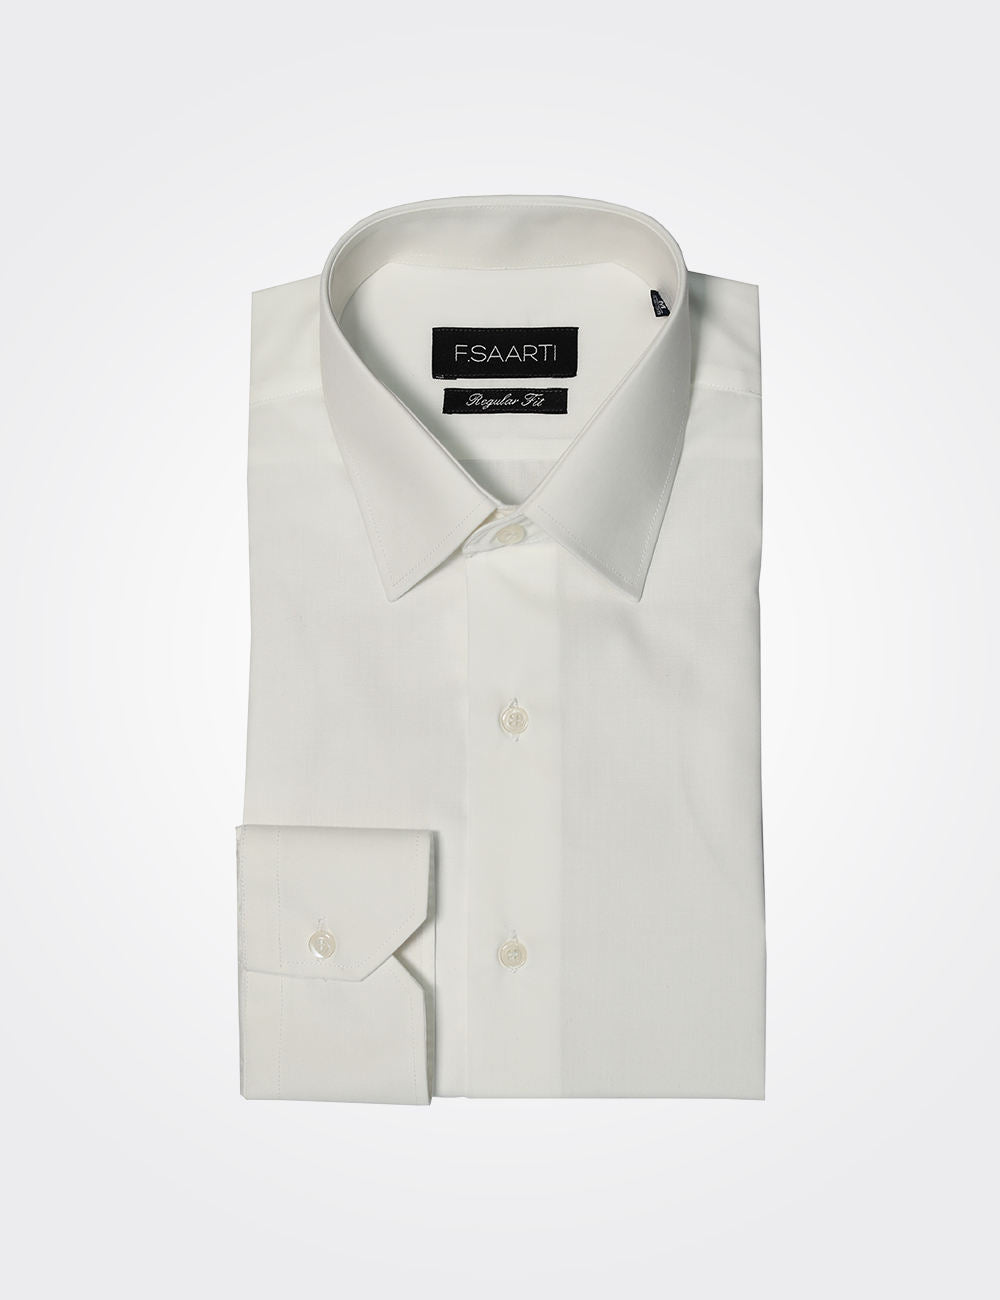 Regular fit white shirt for men